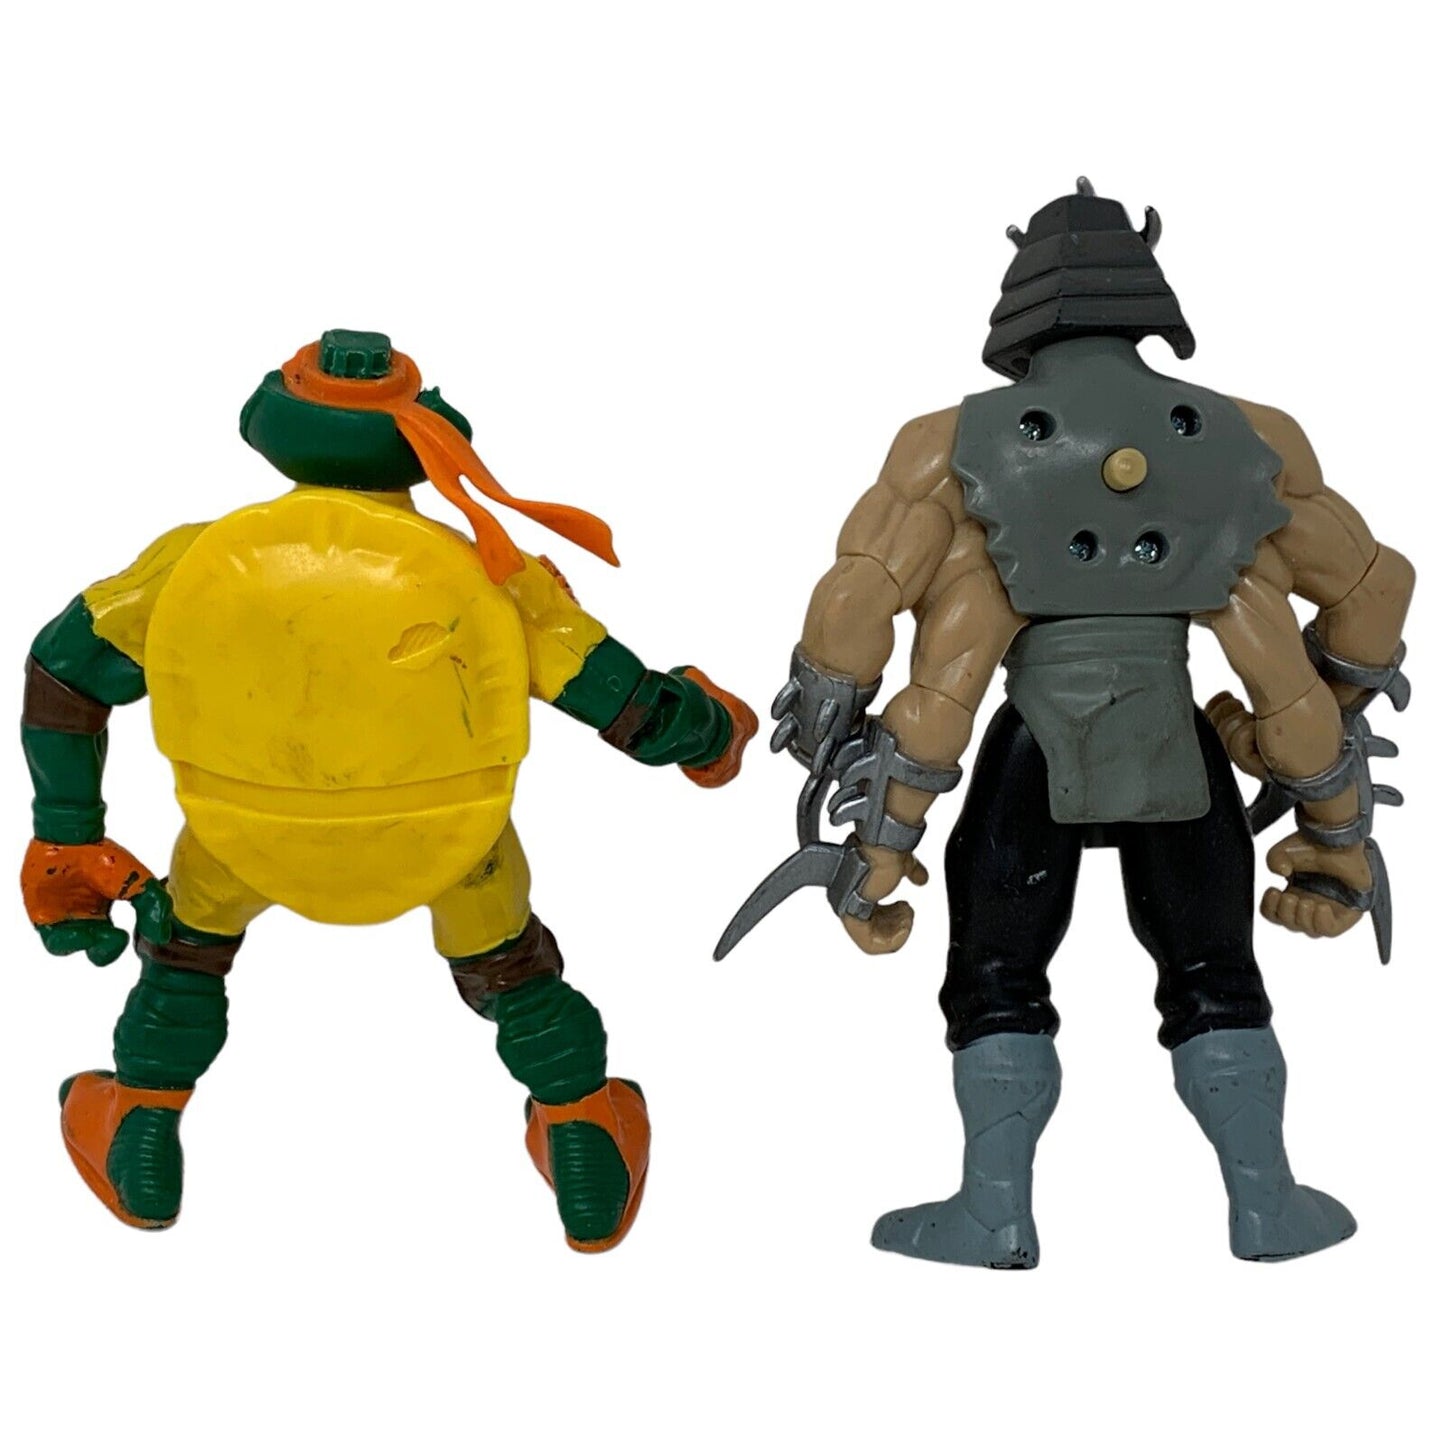 Lot of 5 Vintage Y2Ks TMNT Action Figures Teenage Mutant Ninja Turtles Toys